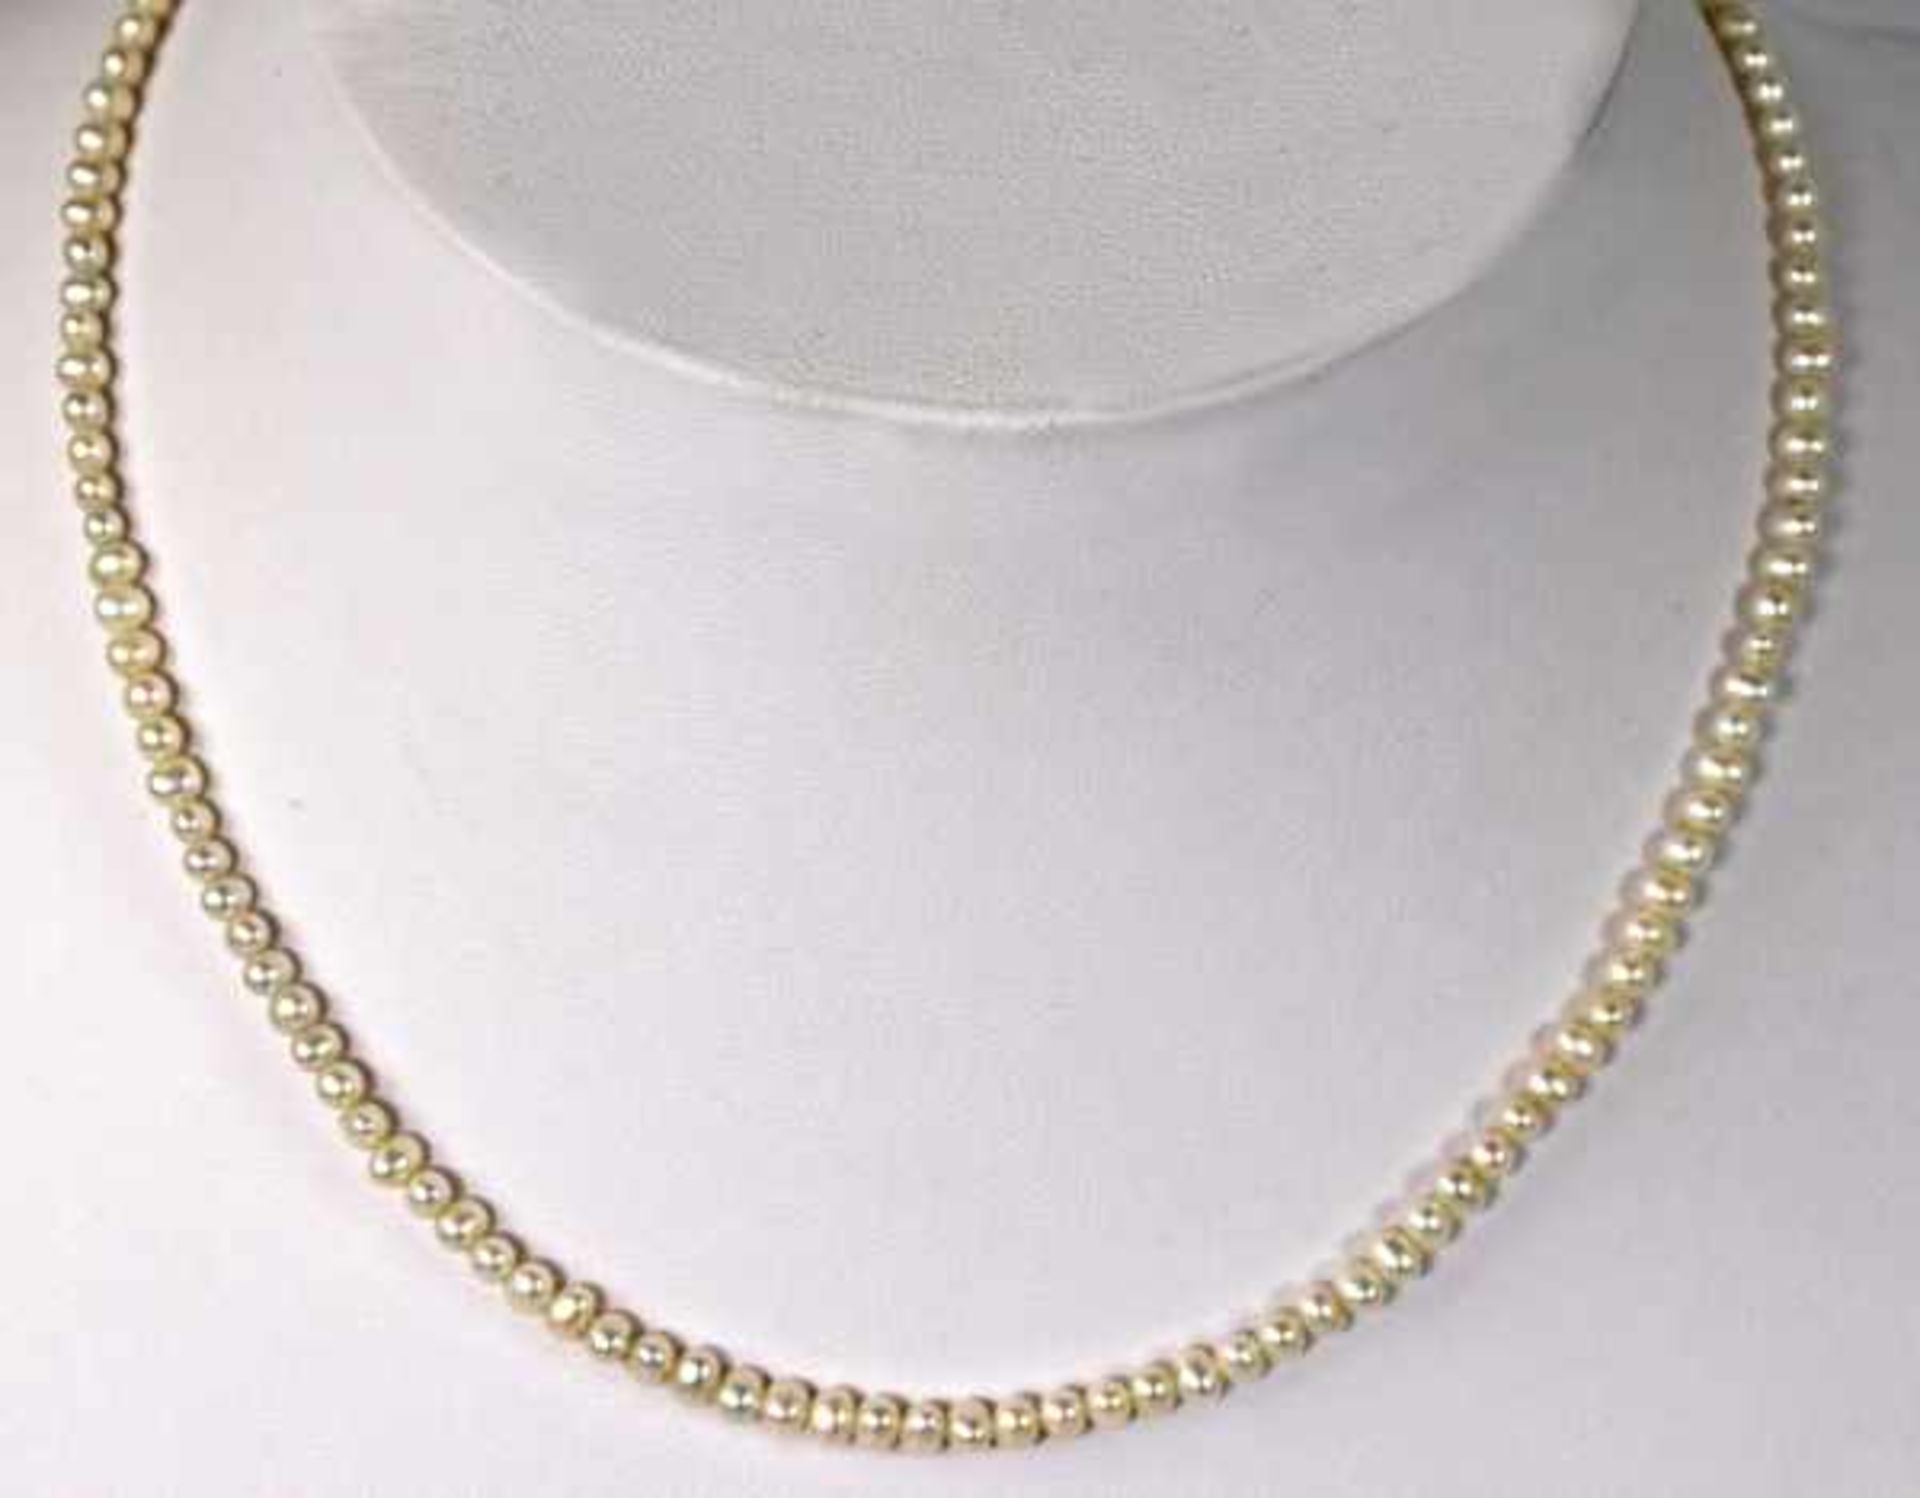 FEINE PERLENKETTE kleine Perlen mit ovalem Goldverschluß 14ct, L 42cm und Paar Ohrstecker mit - Image 3 of 3